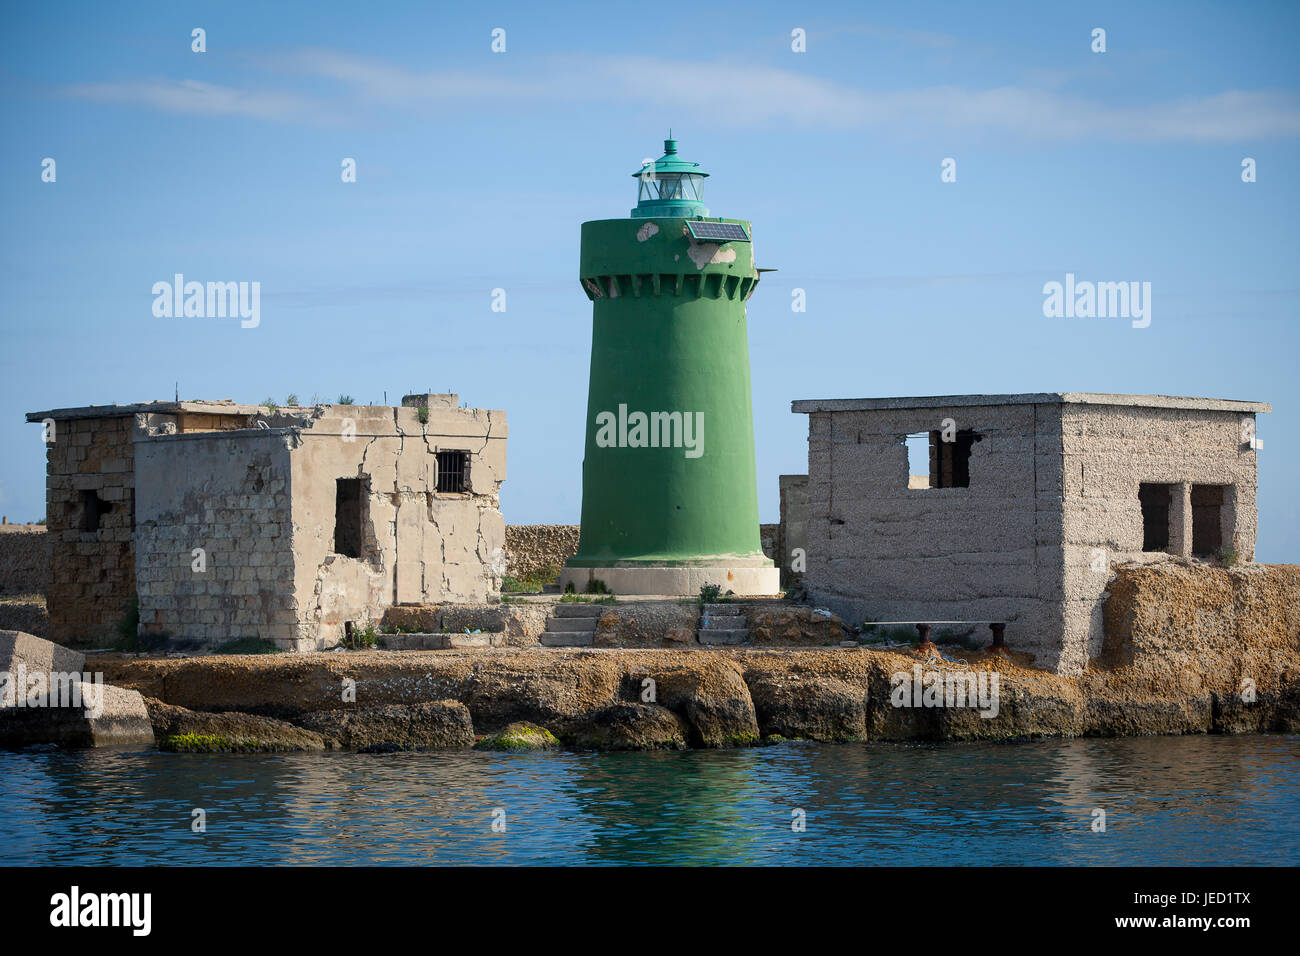 Le phare vert à l'entrée du port, la vue de la mer, Italie Banque D'Images